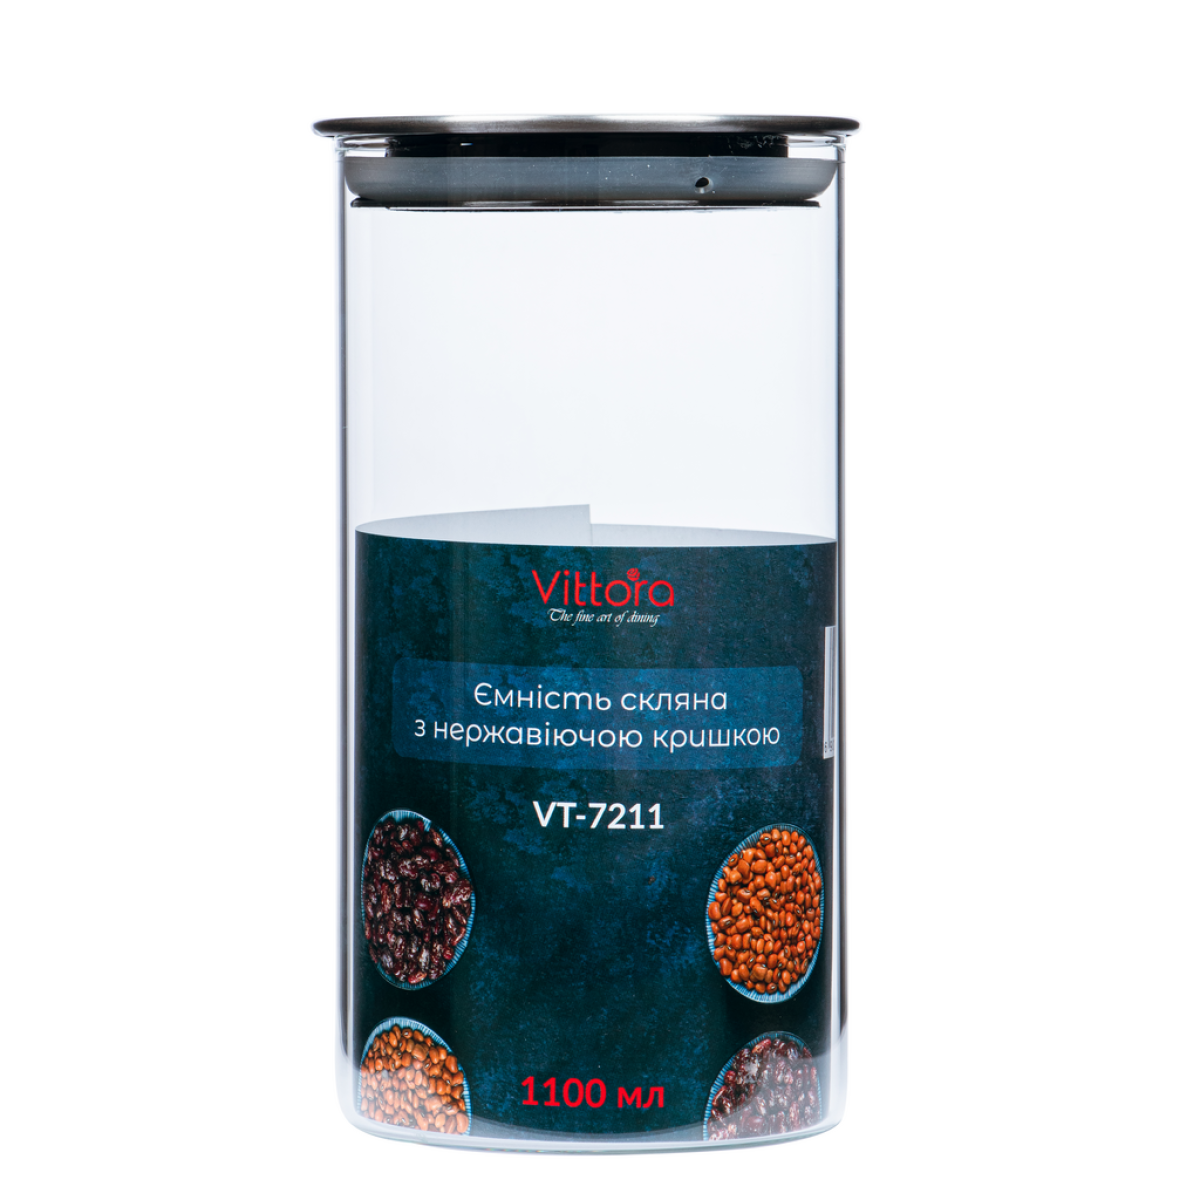 Ємність скляна з нержавіючої кришкою VT-7211 Vittora 1100 мл